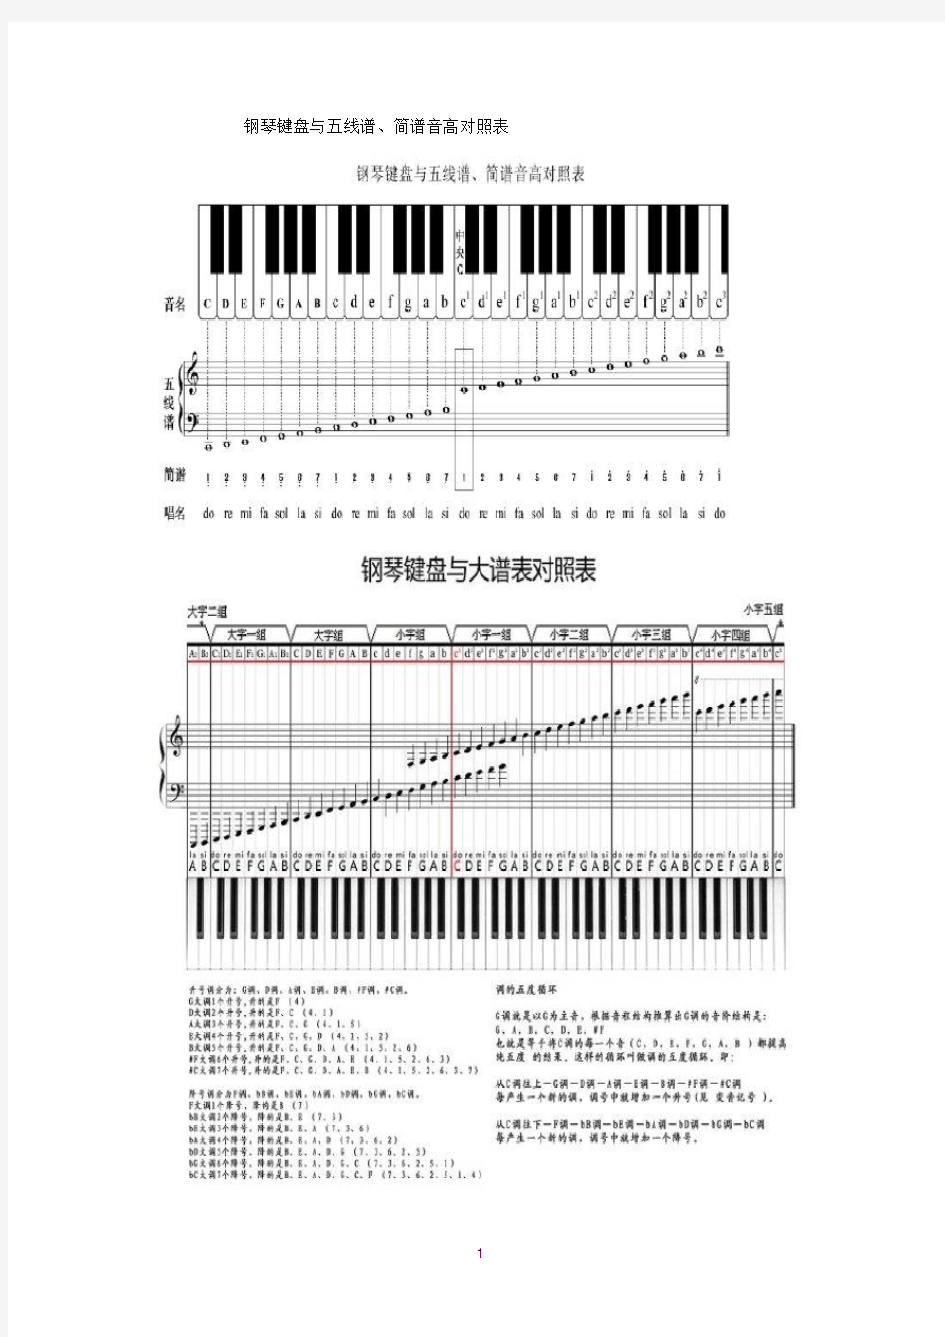 钢琴键盘与五线谱、简谱音高对照表钢琴音高简谱(2020年10月整理).pdf